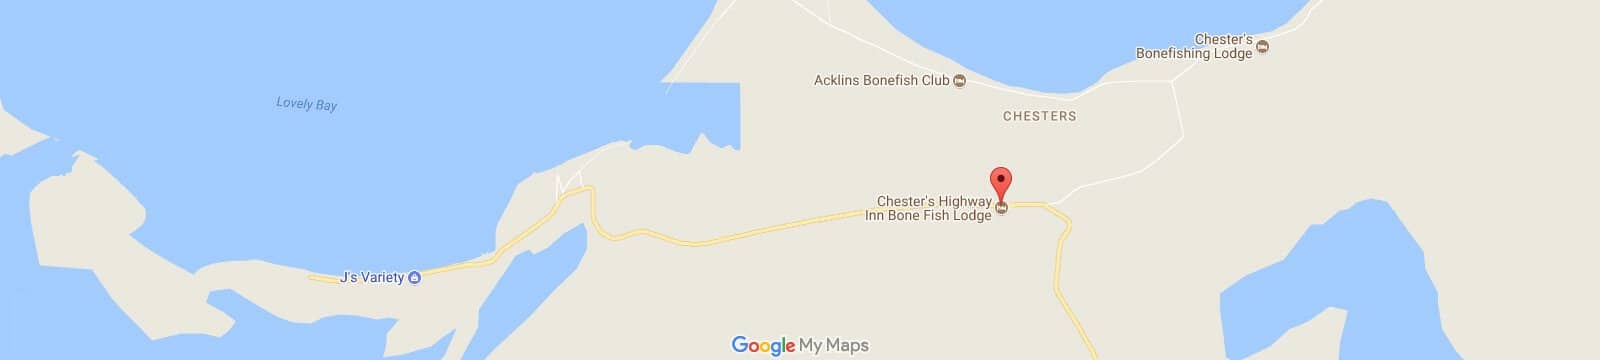 chester-bonefish-map